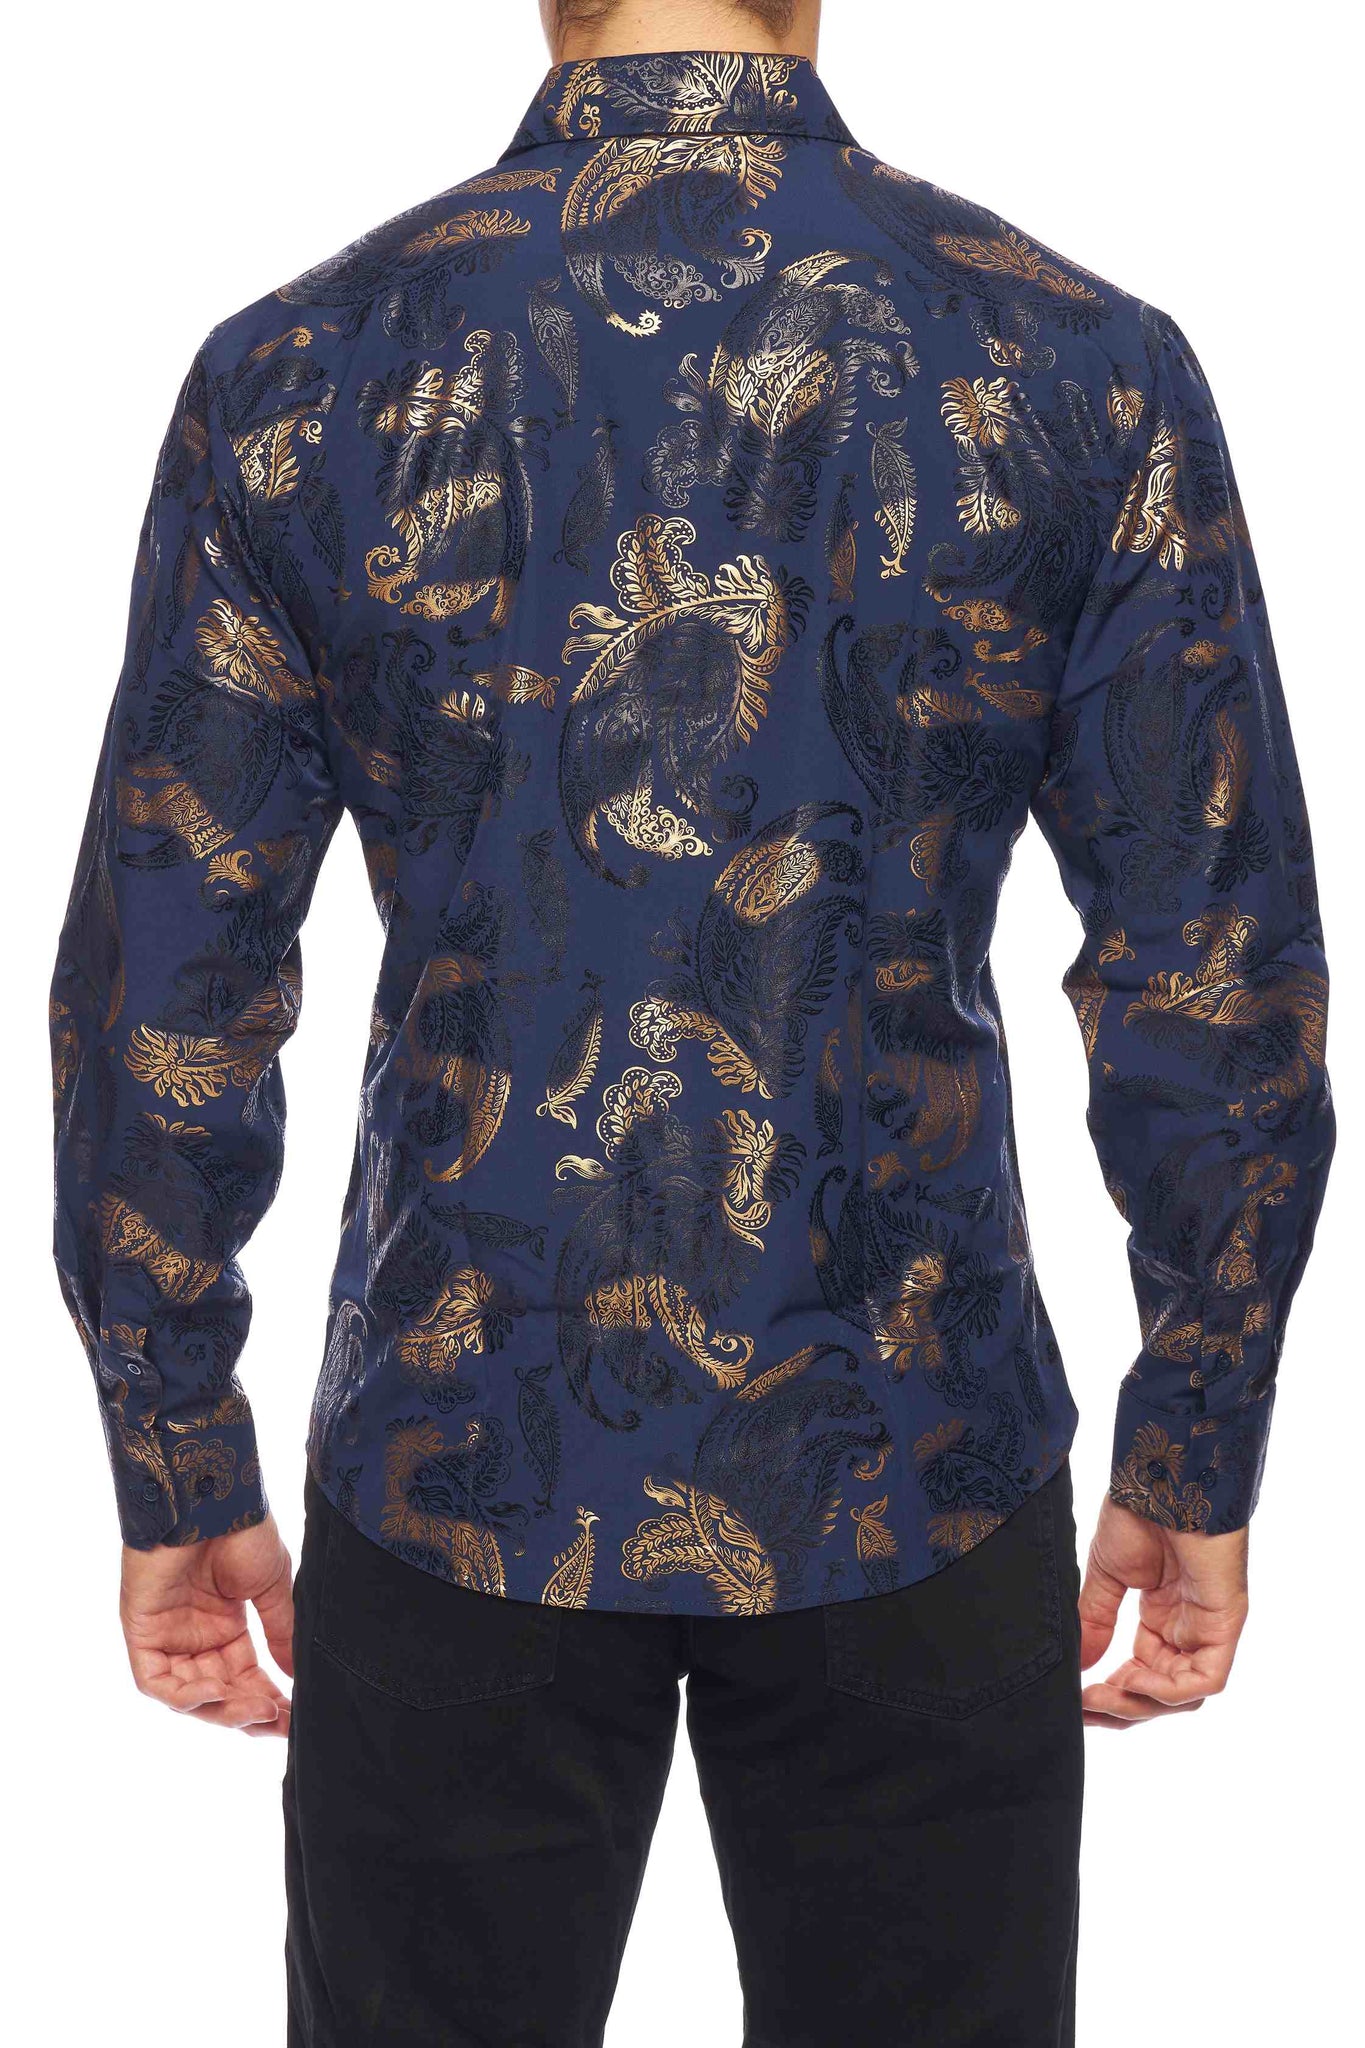 Mens Luxury Brand Printed Silk Like Shirts-HLS2002L-528